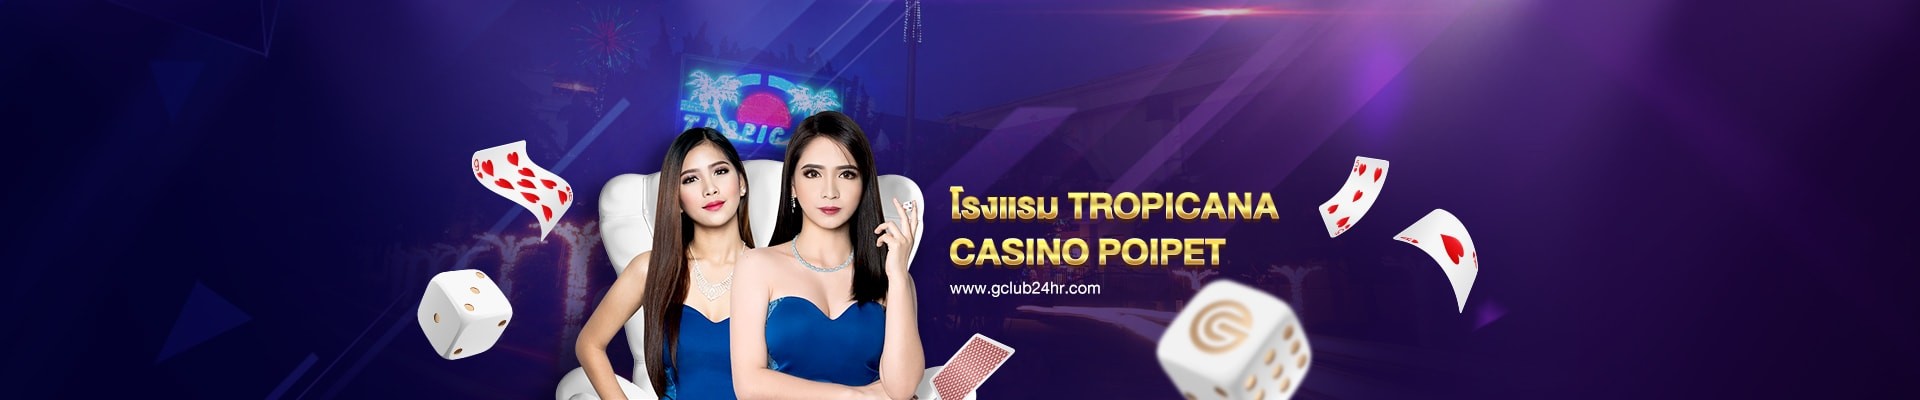 gclub24hr_casino_online_tropicana_casino_poipet